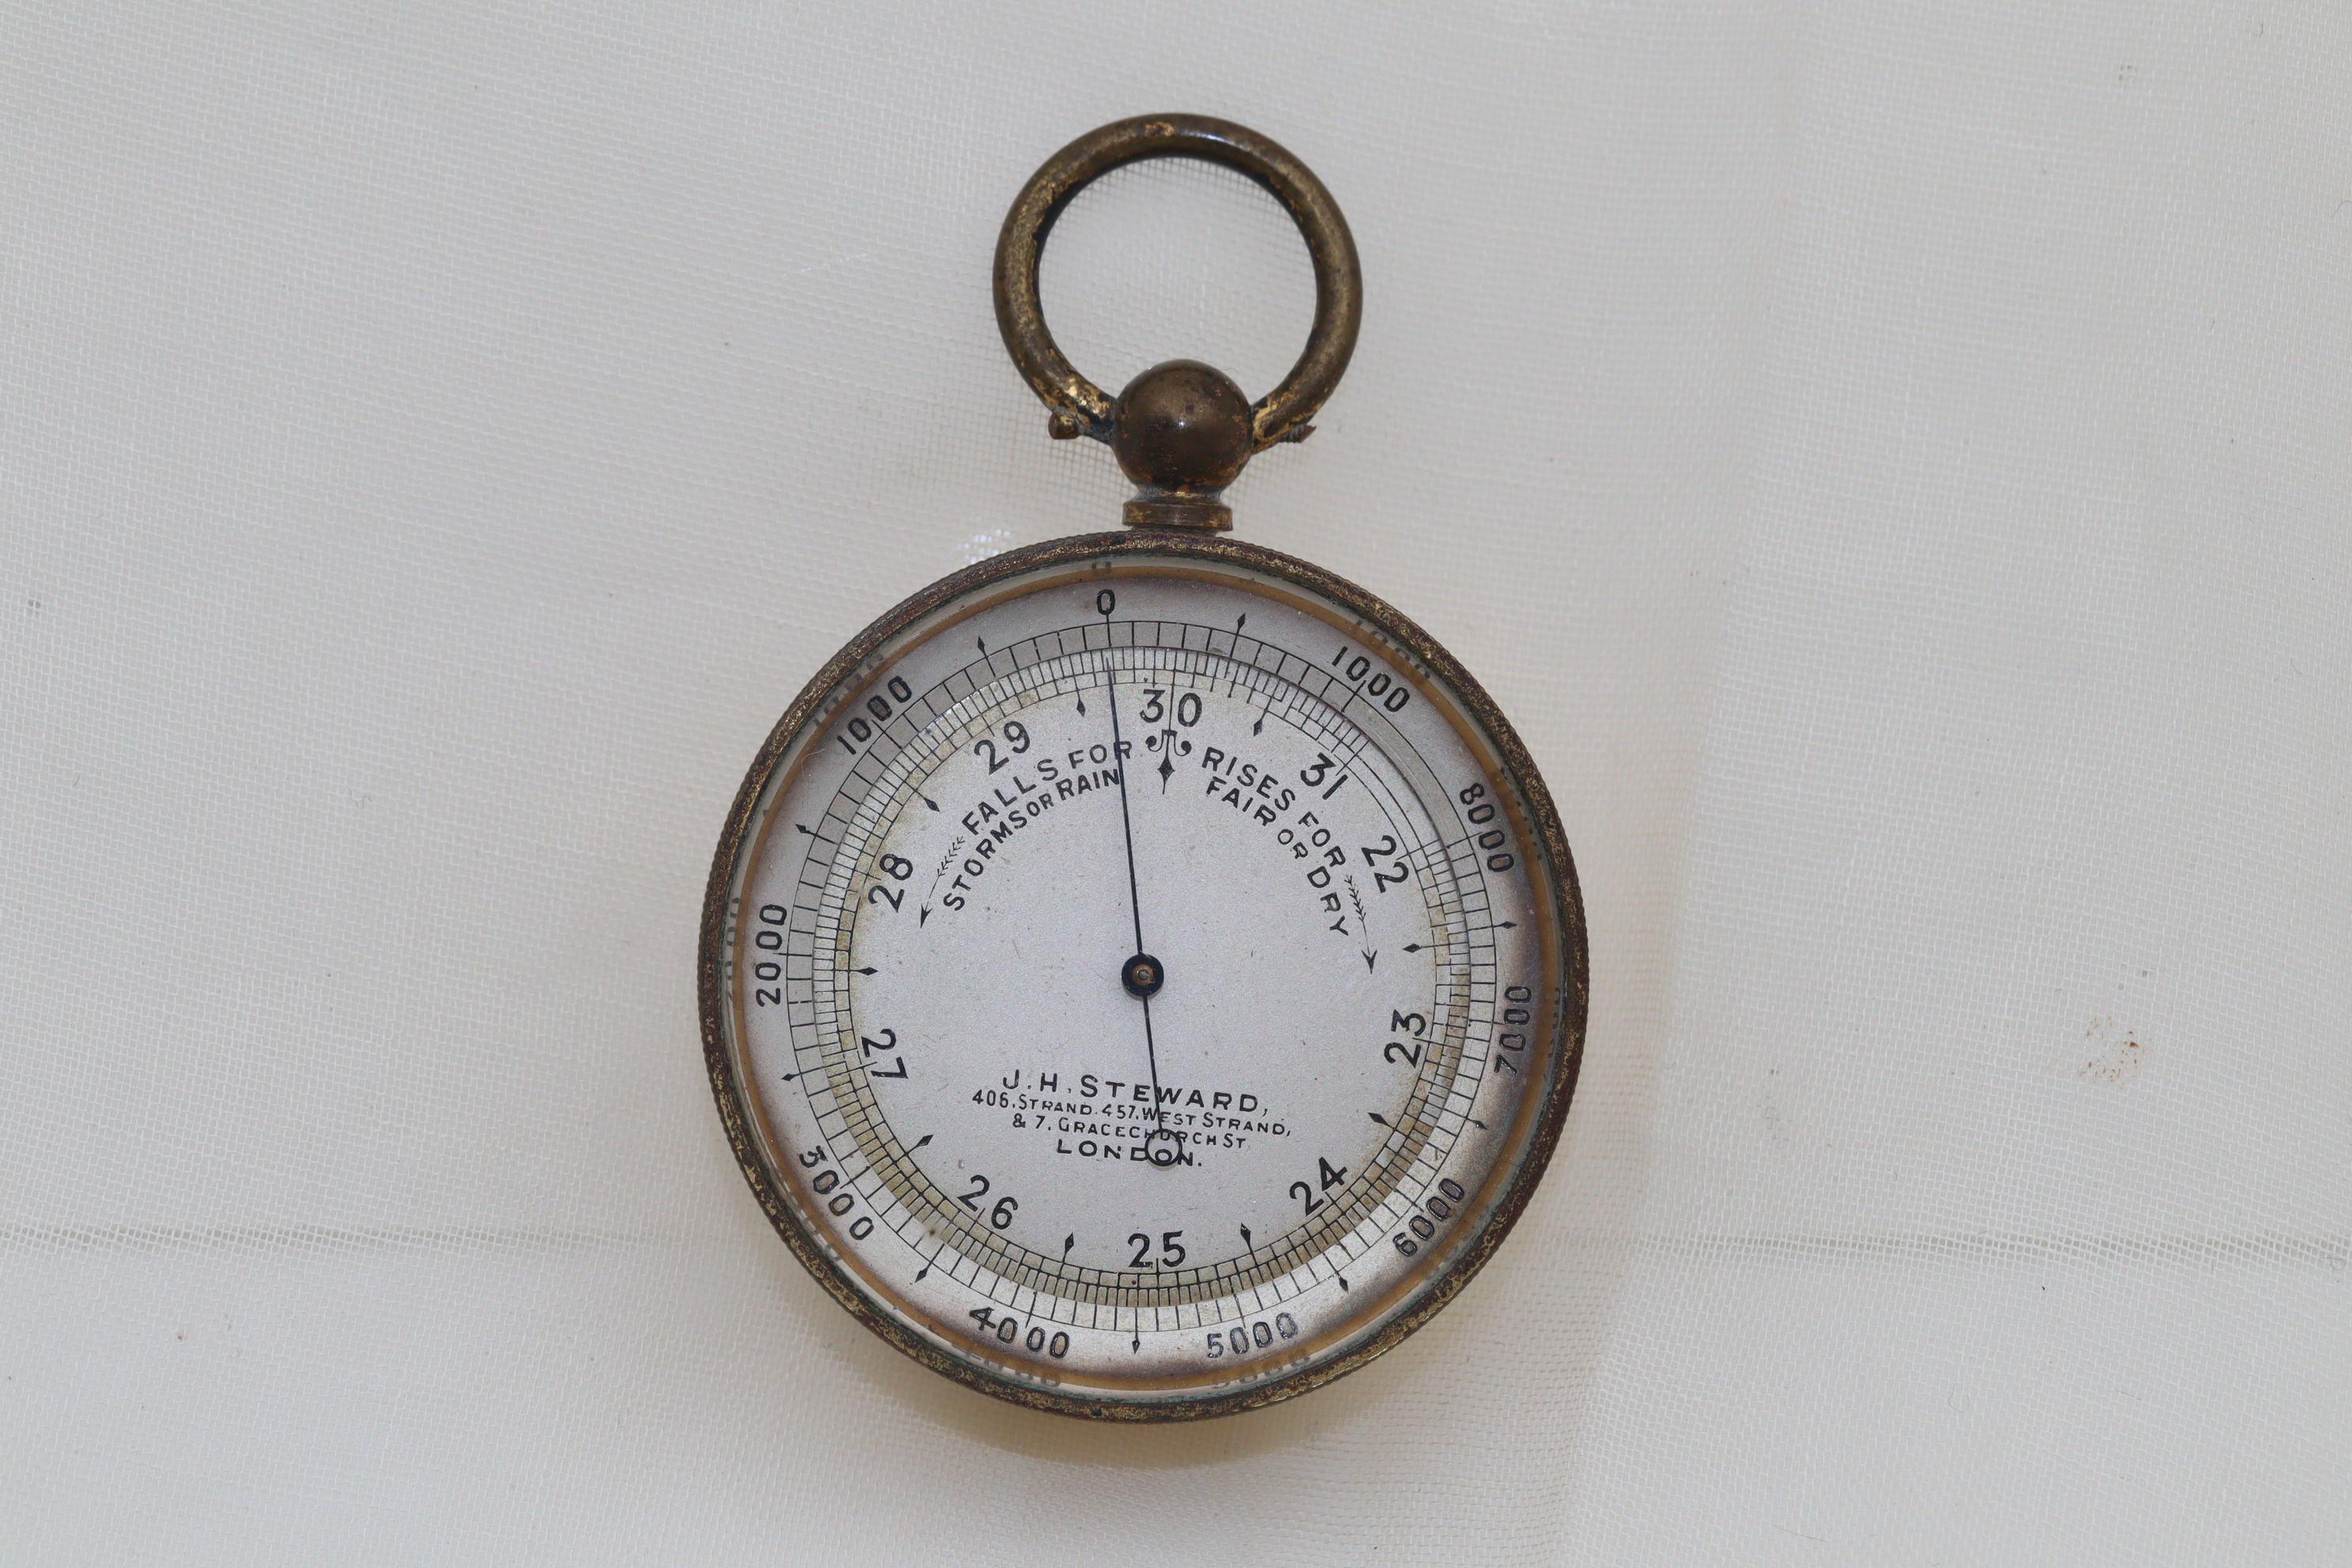 Dieses Taschenbarometer wurde von der Firma J. H. Steward hergestellt und befindet sich noch immer in seinem originalen lederbezogenen Etui. Das versilberte Zifferblatt mit dem gebläuten Zeiger ist von einer drehbaren Höhenmesserlünette umgeben, auf